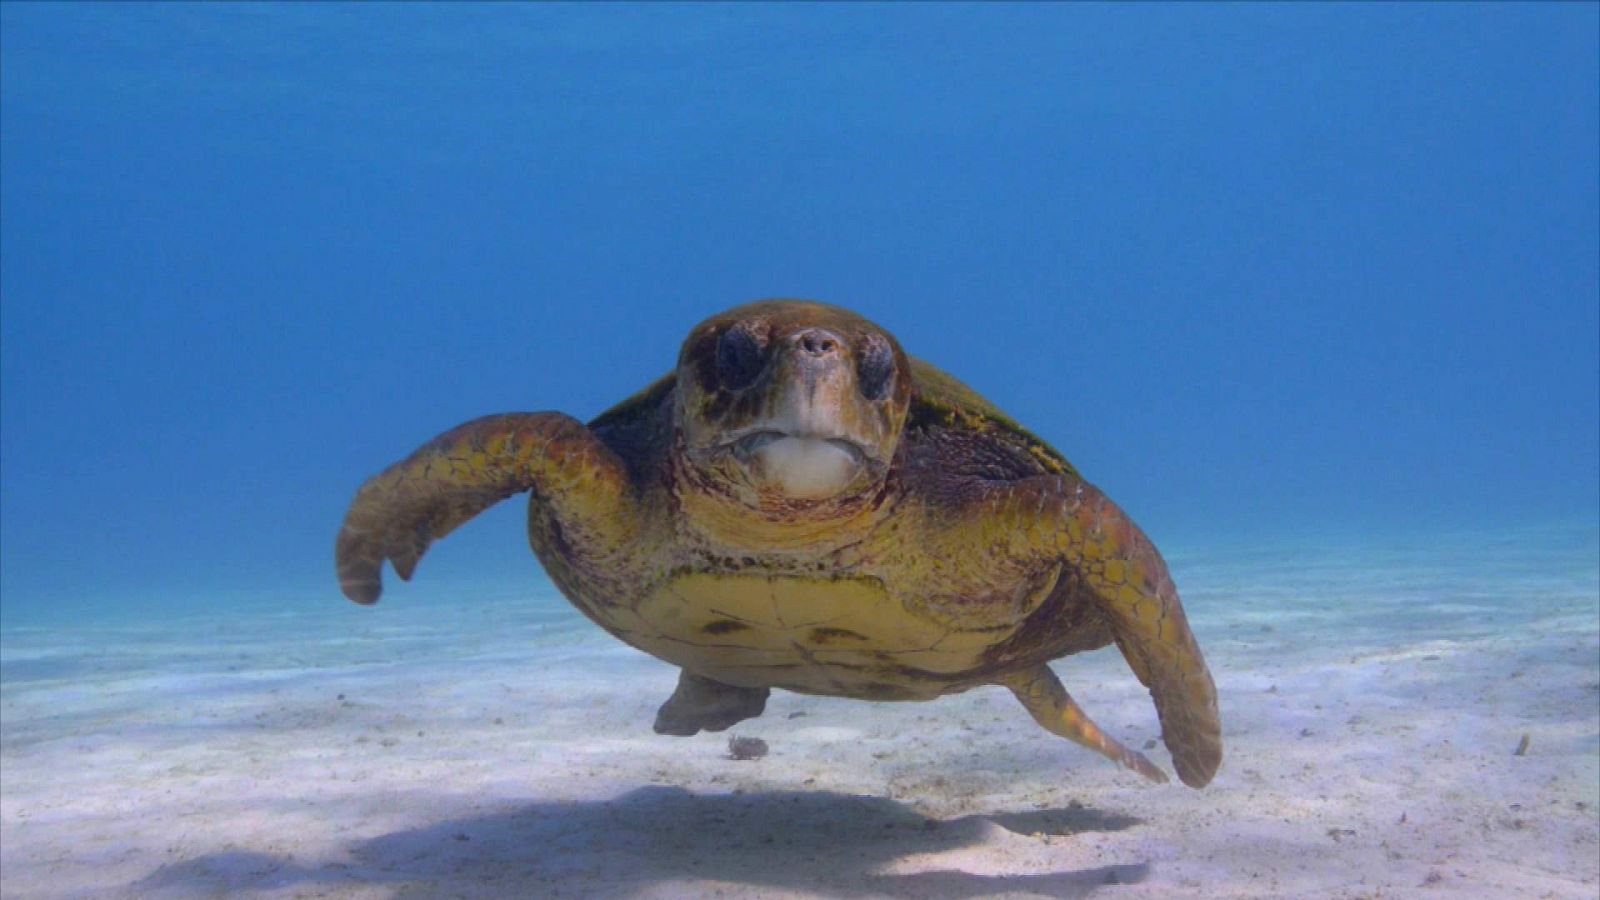 ¡Qué animal! - La lucha de la tortuga boba por sobrevivir entre plásticos